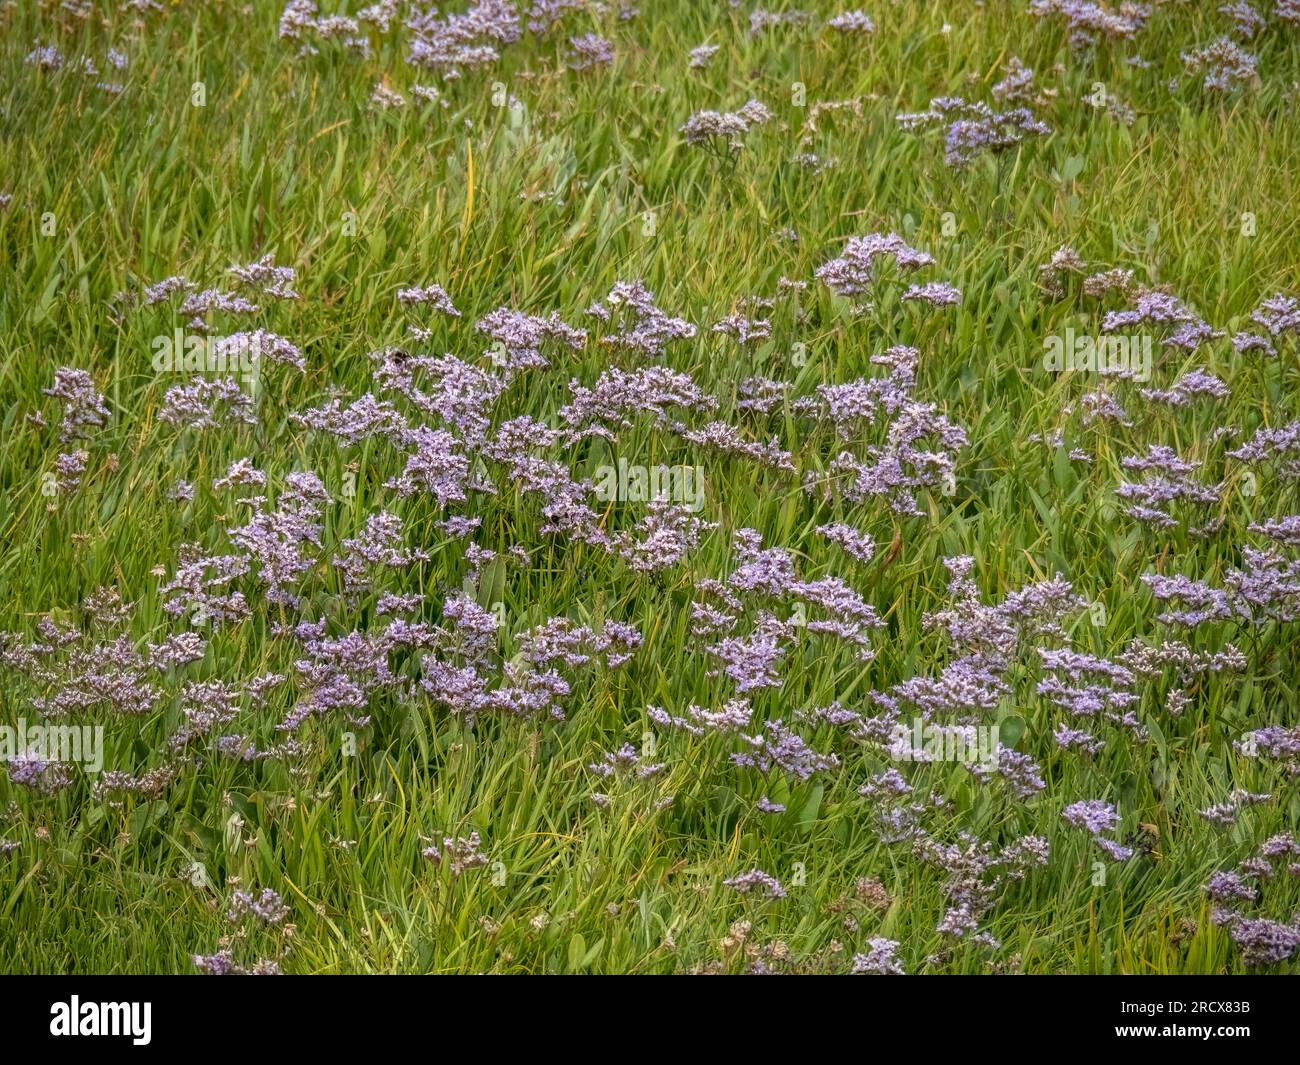 Limonium sinuatum, auch bekannt als Wellenblatt-Lavendel, Stacie, Seevendel, Kerbblatt-Sumpfrosmarin, Meerrosa. Wildwuchs an der Küste von Devon, Großbritannien. Stockfoto